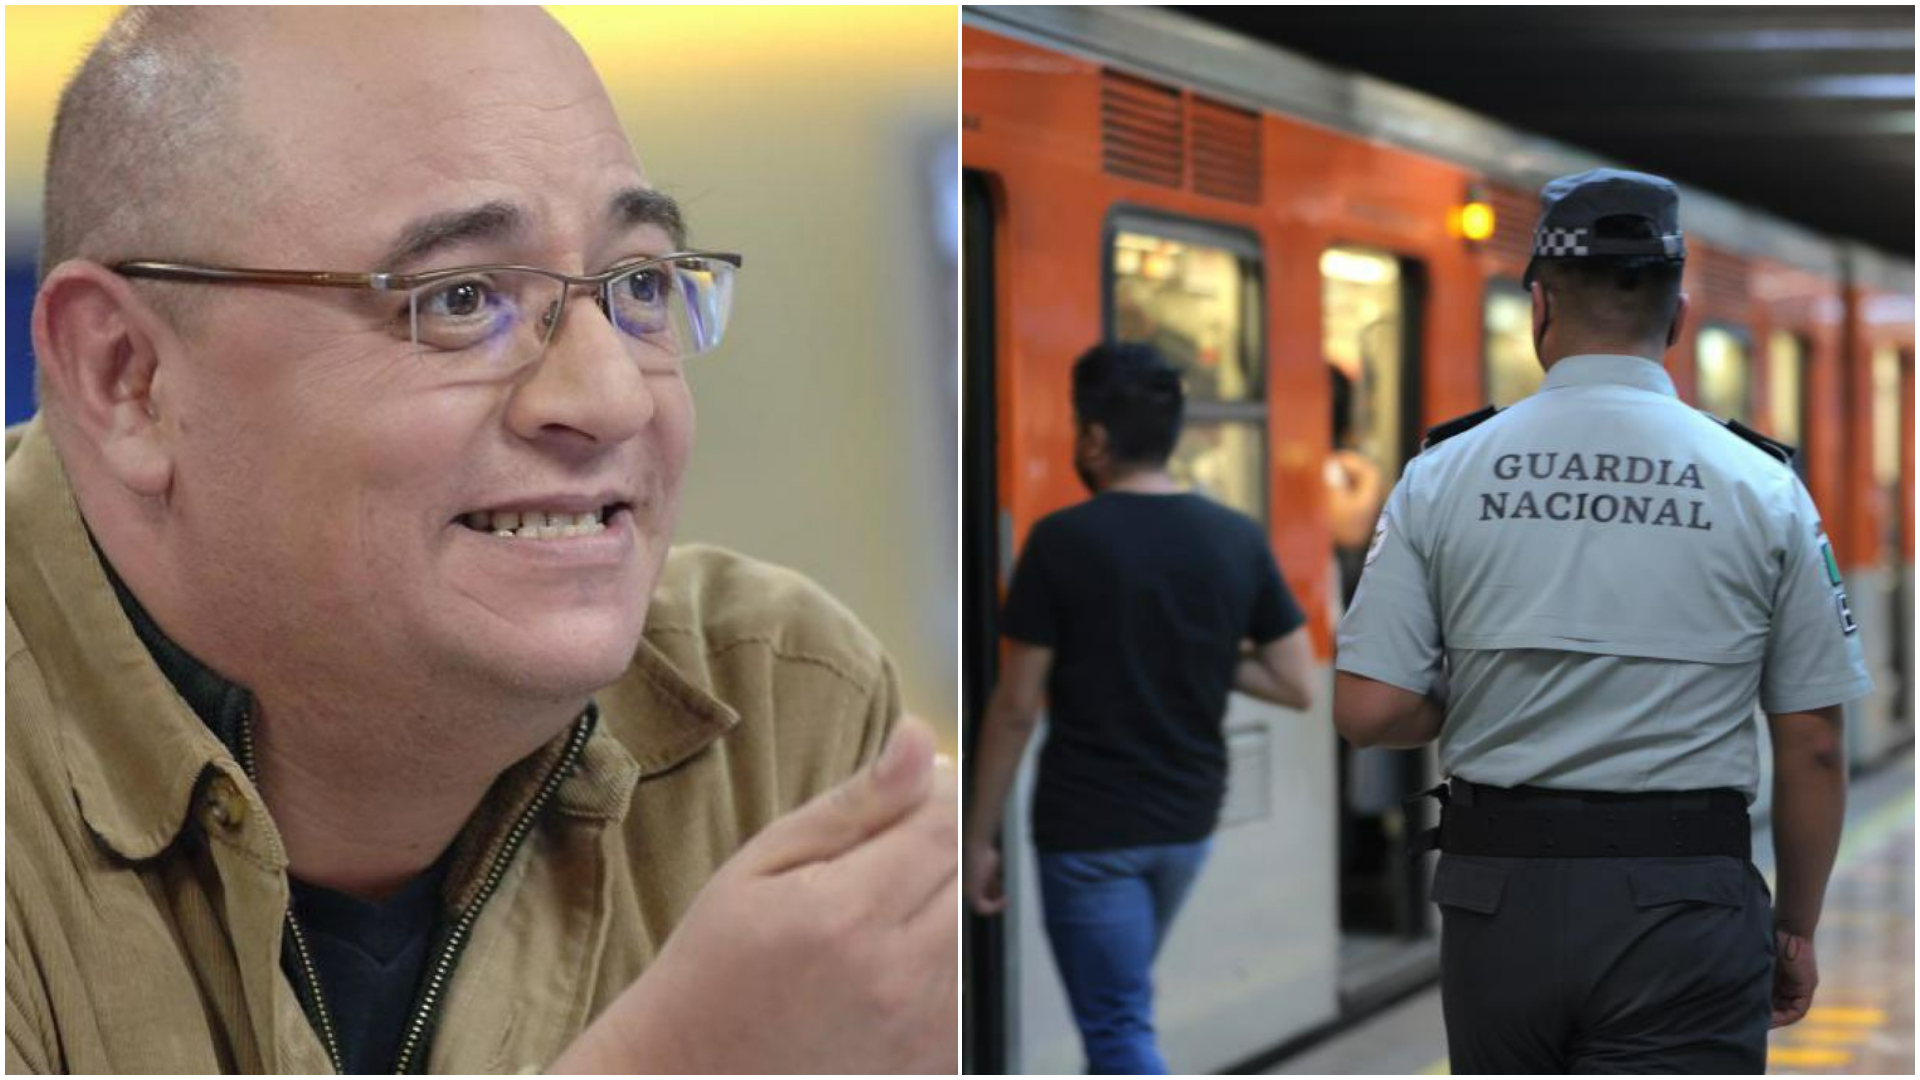 La crítica de Víctor Trujillo por Guardia Nacional en el Metro CDMX: “No malgaste en servicio, invierta en miedo”